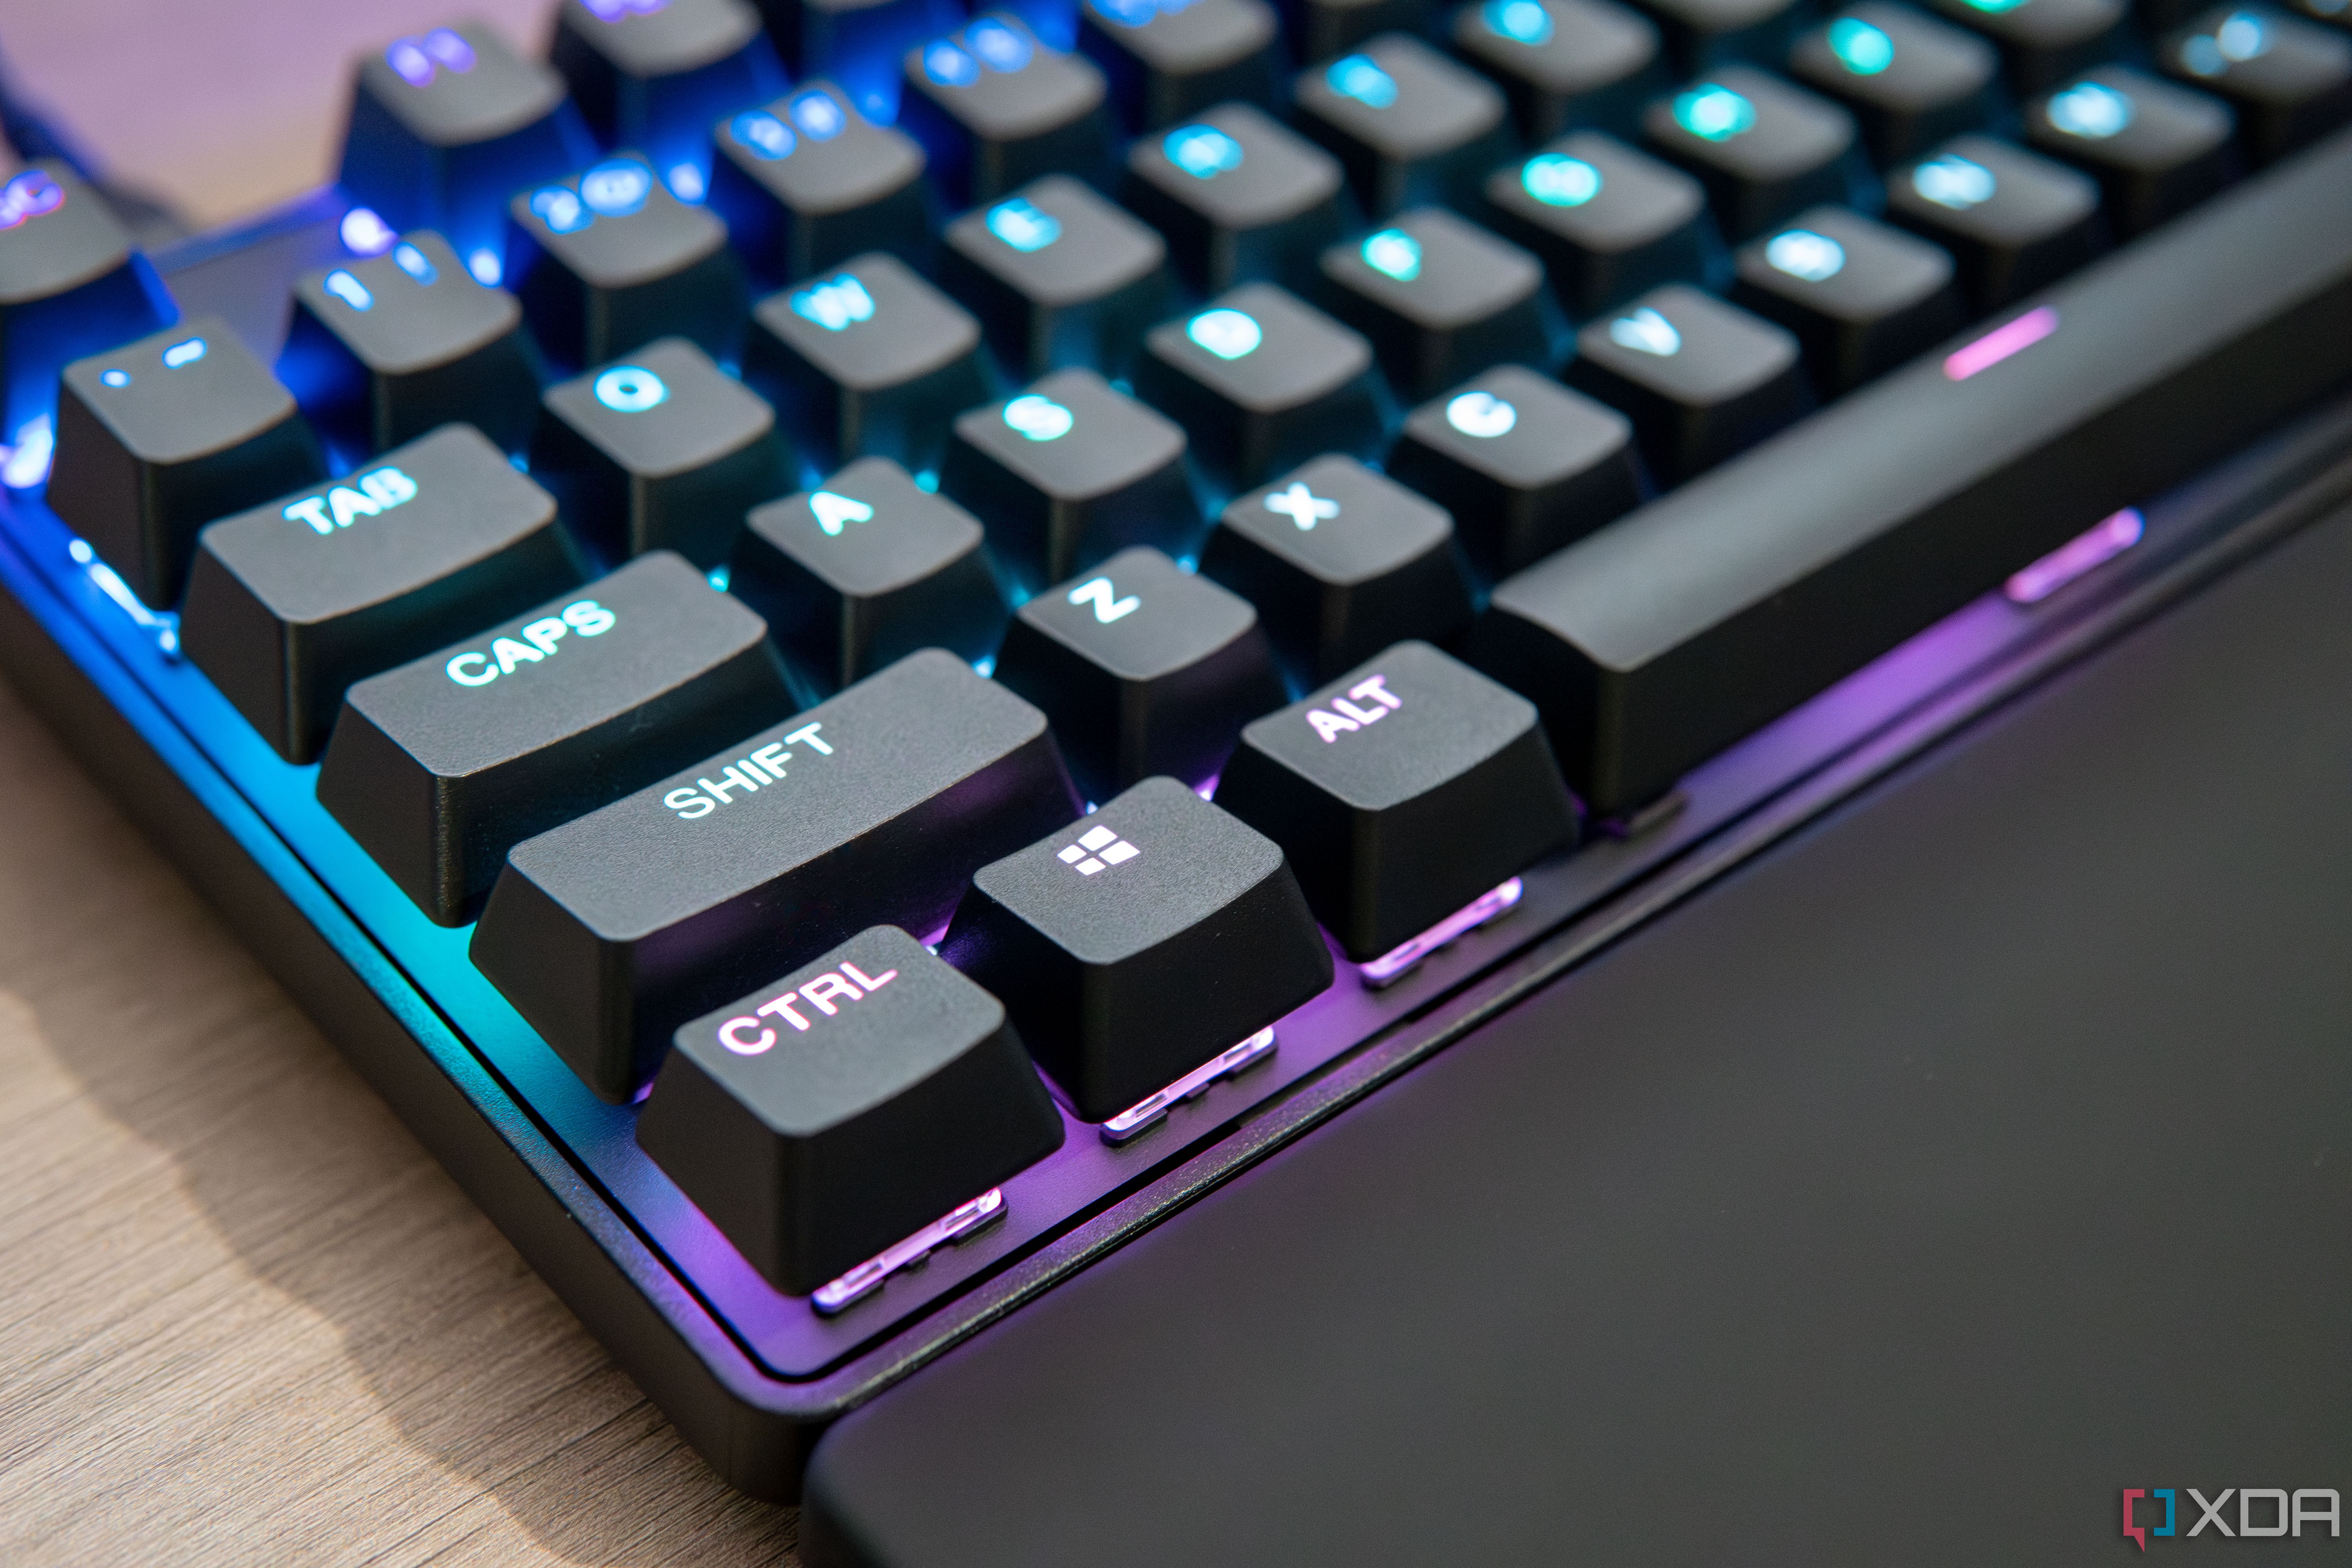 SteelSeries Apex 3 RGB Gaming keyboard: Best under $50? 